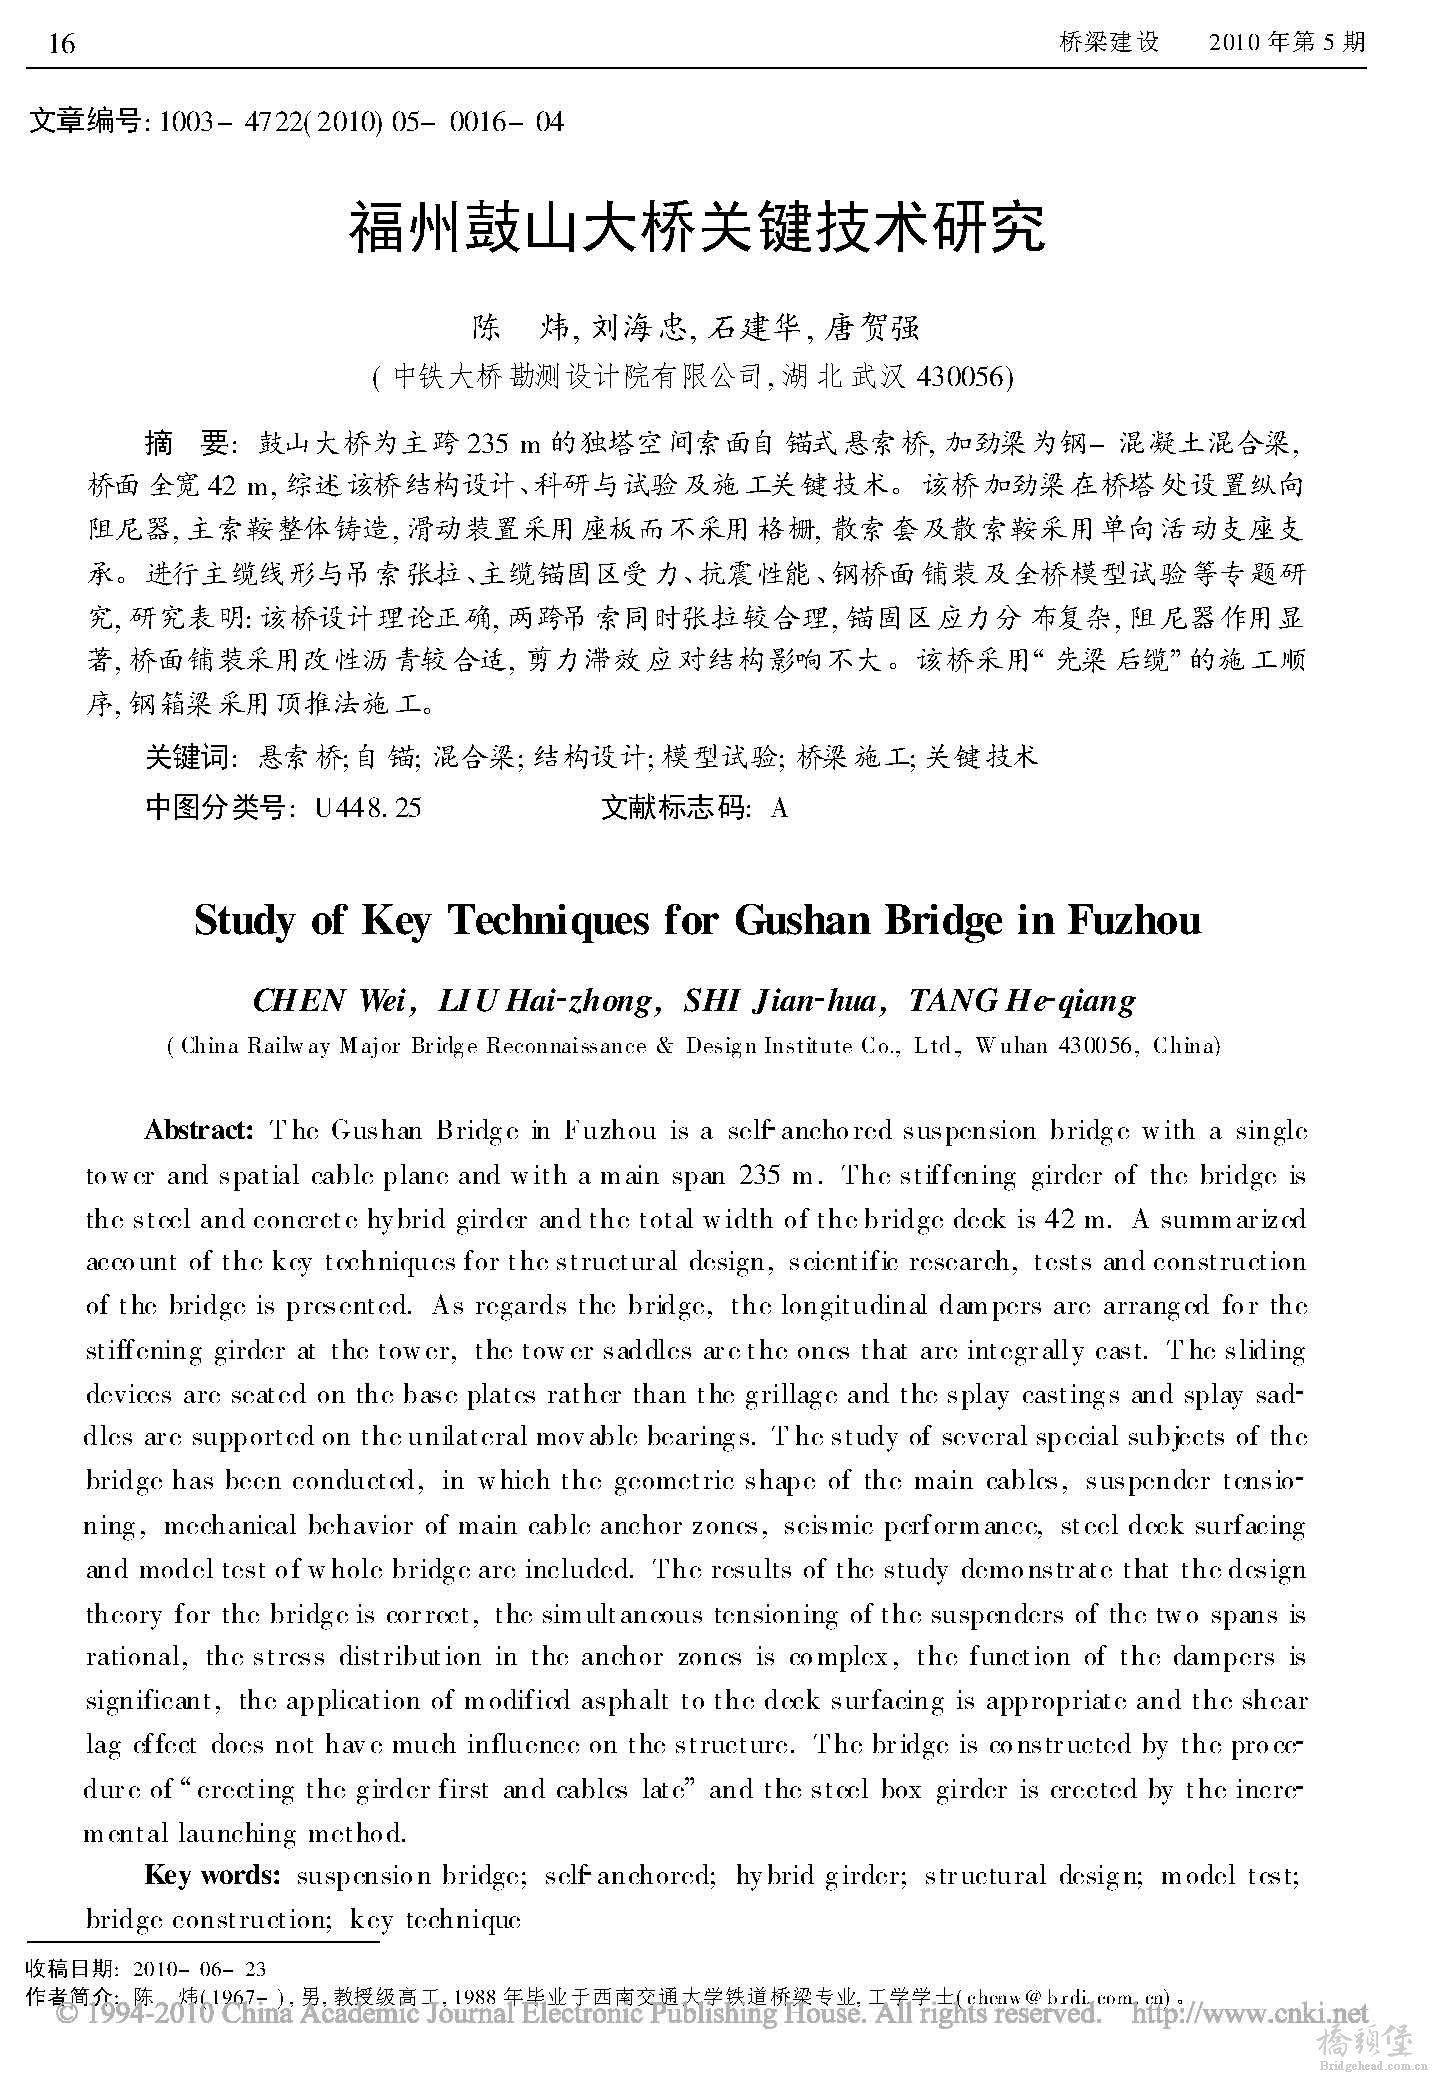 福州鼓山大桥关键技术研究_页面_1.jpg